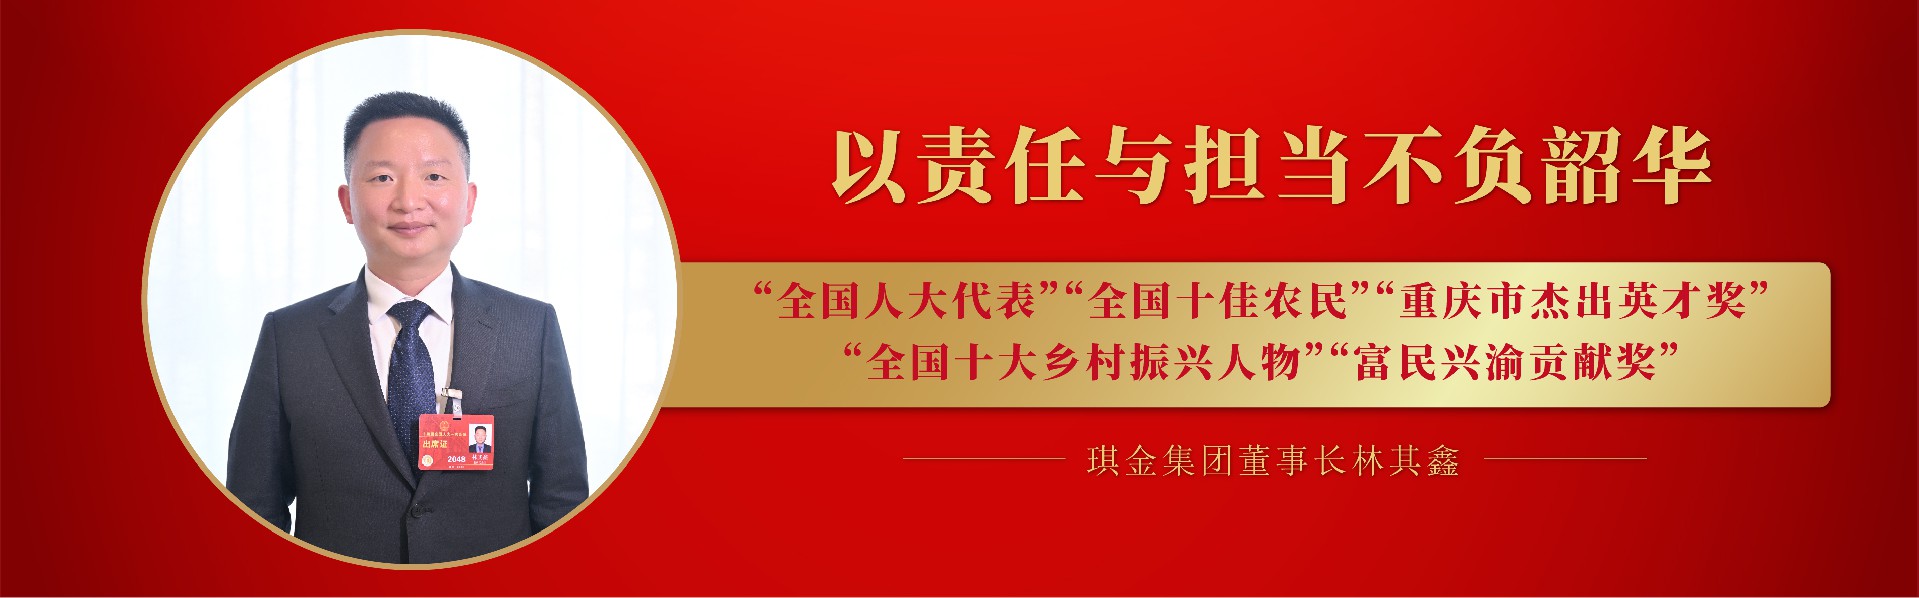 博鱼体育·(中国)官方网站董事长林其鑫获得多项荣誉